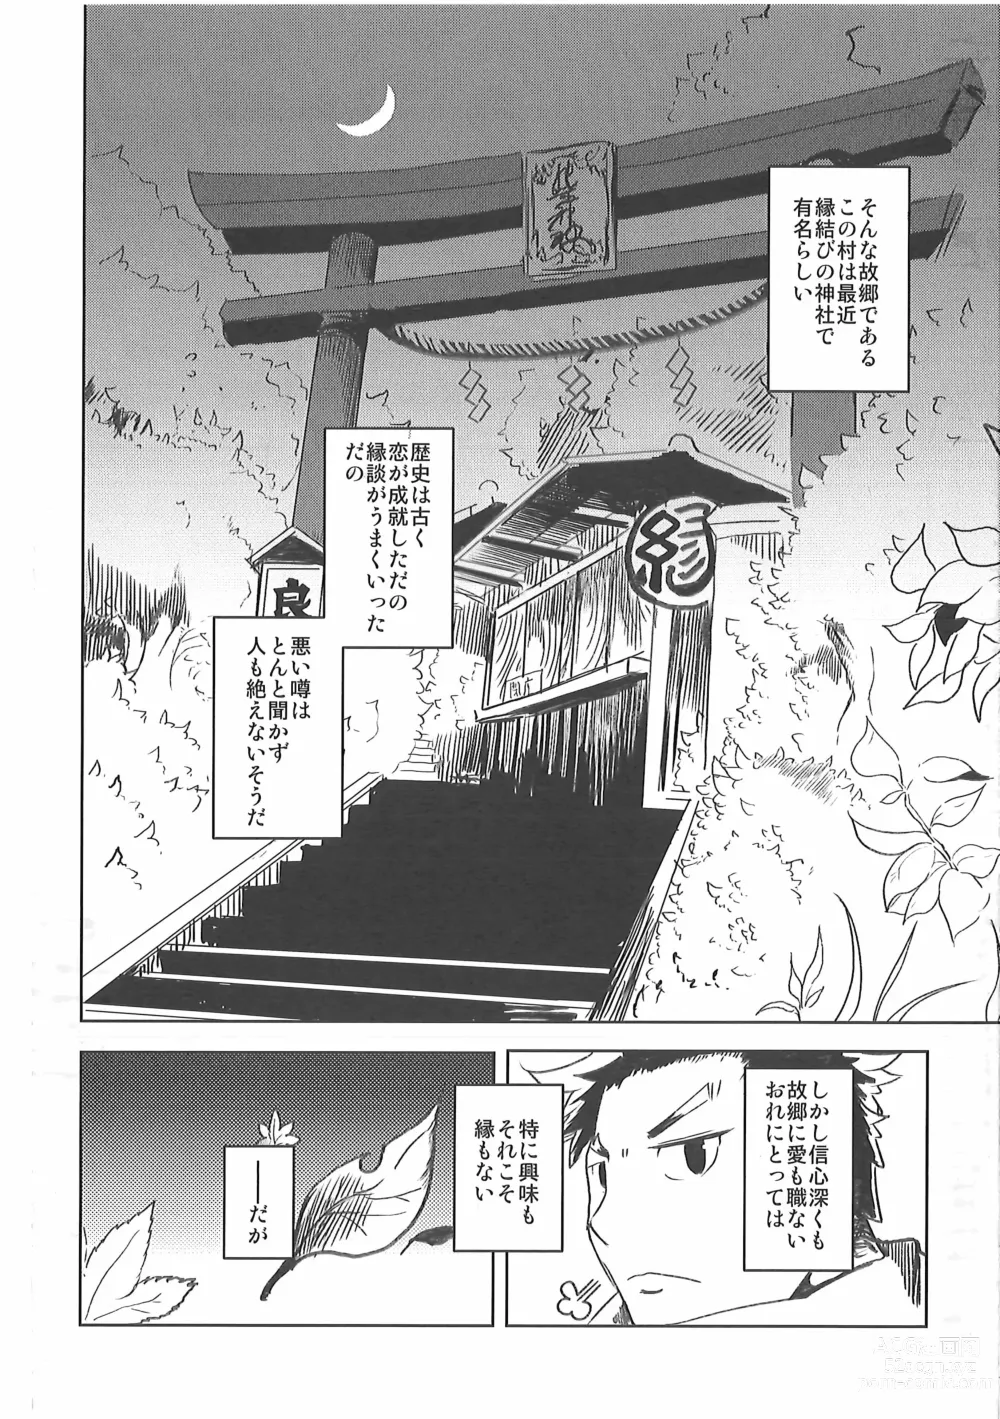 Page 5 of doujinshi Kore mo Goen Toiukoto de